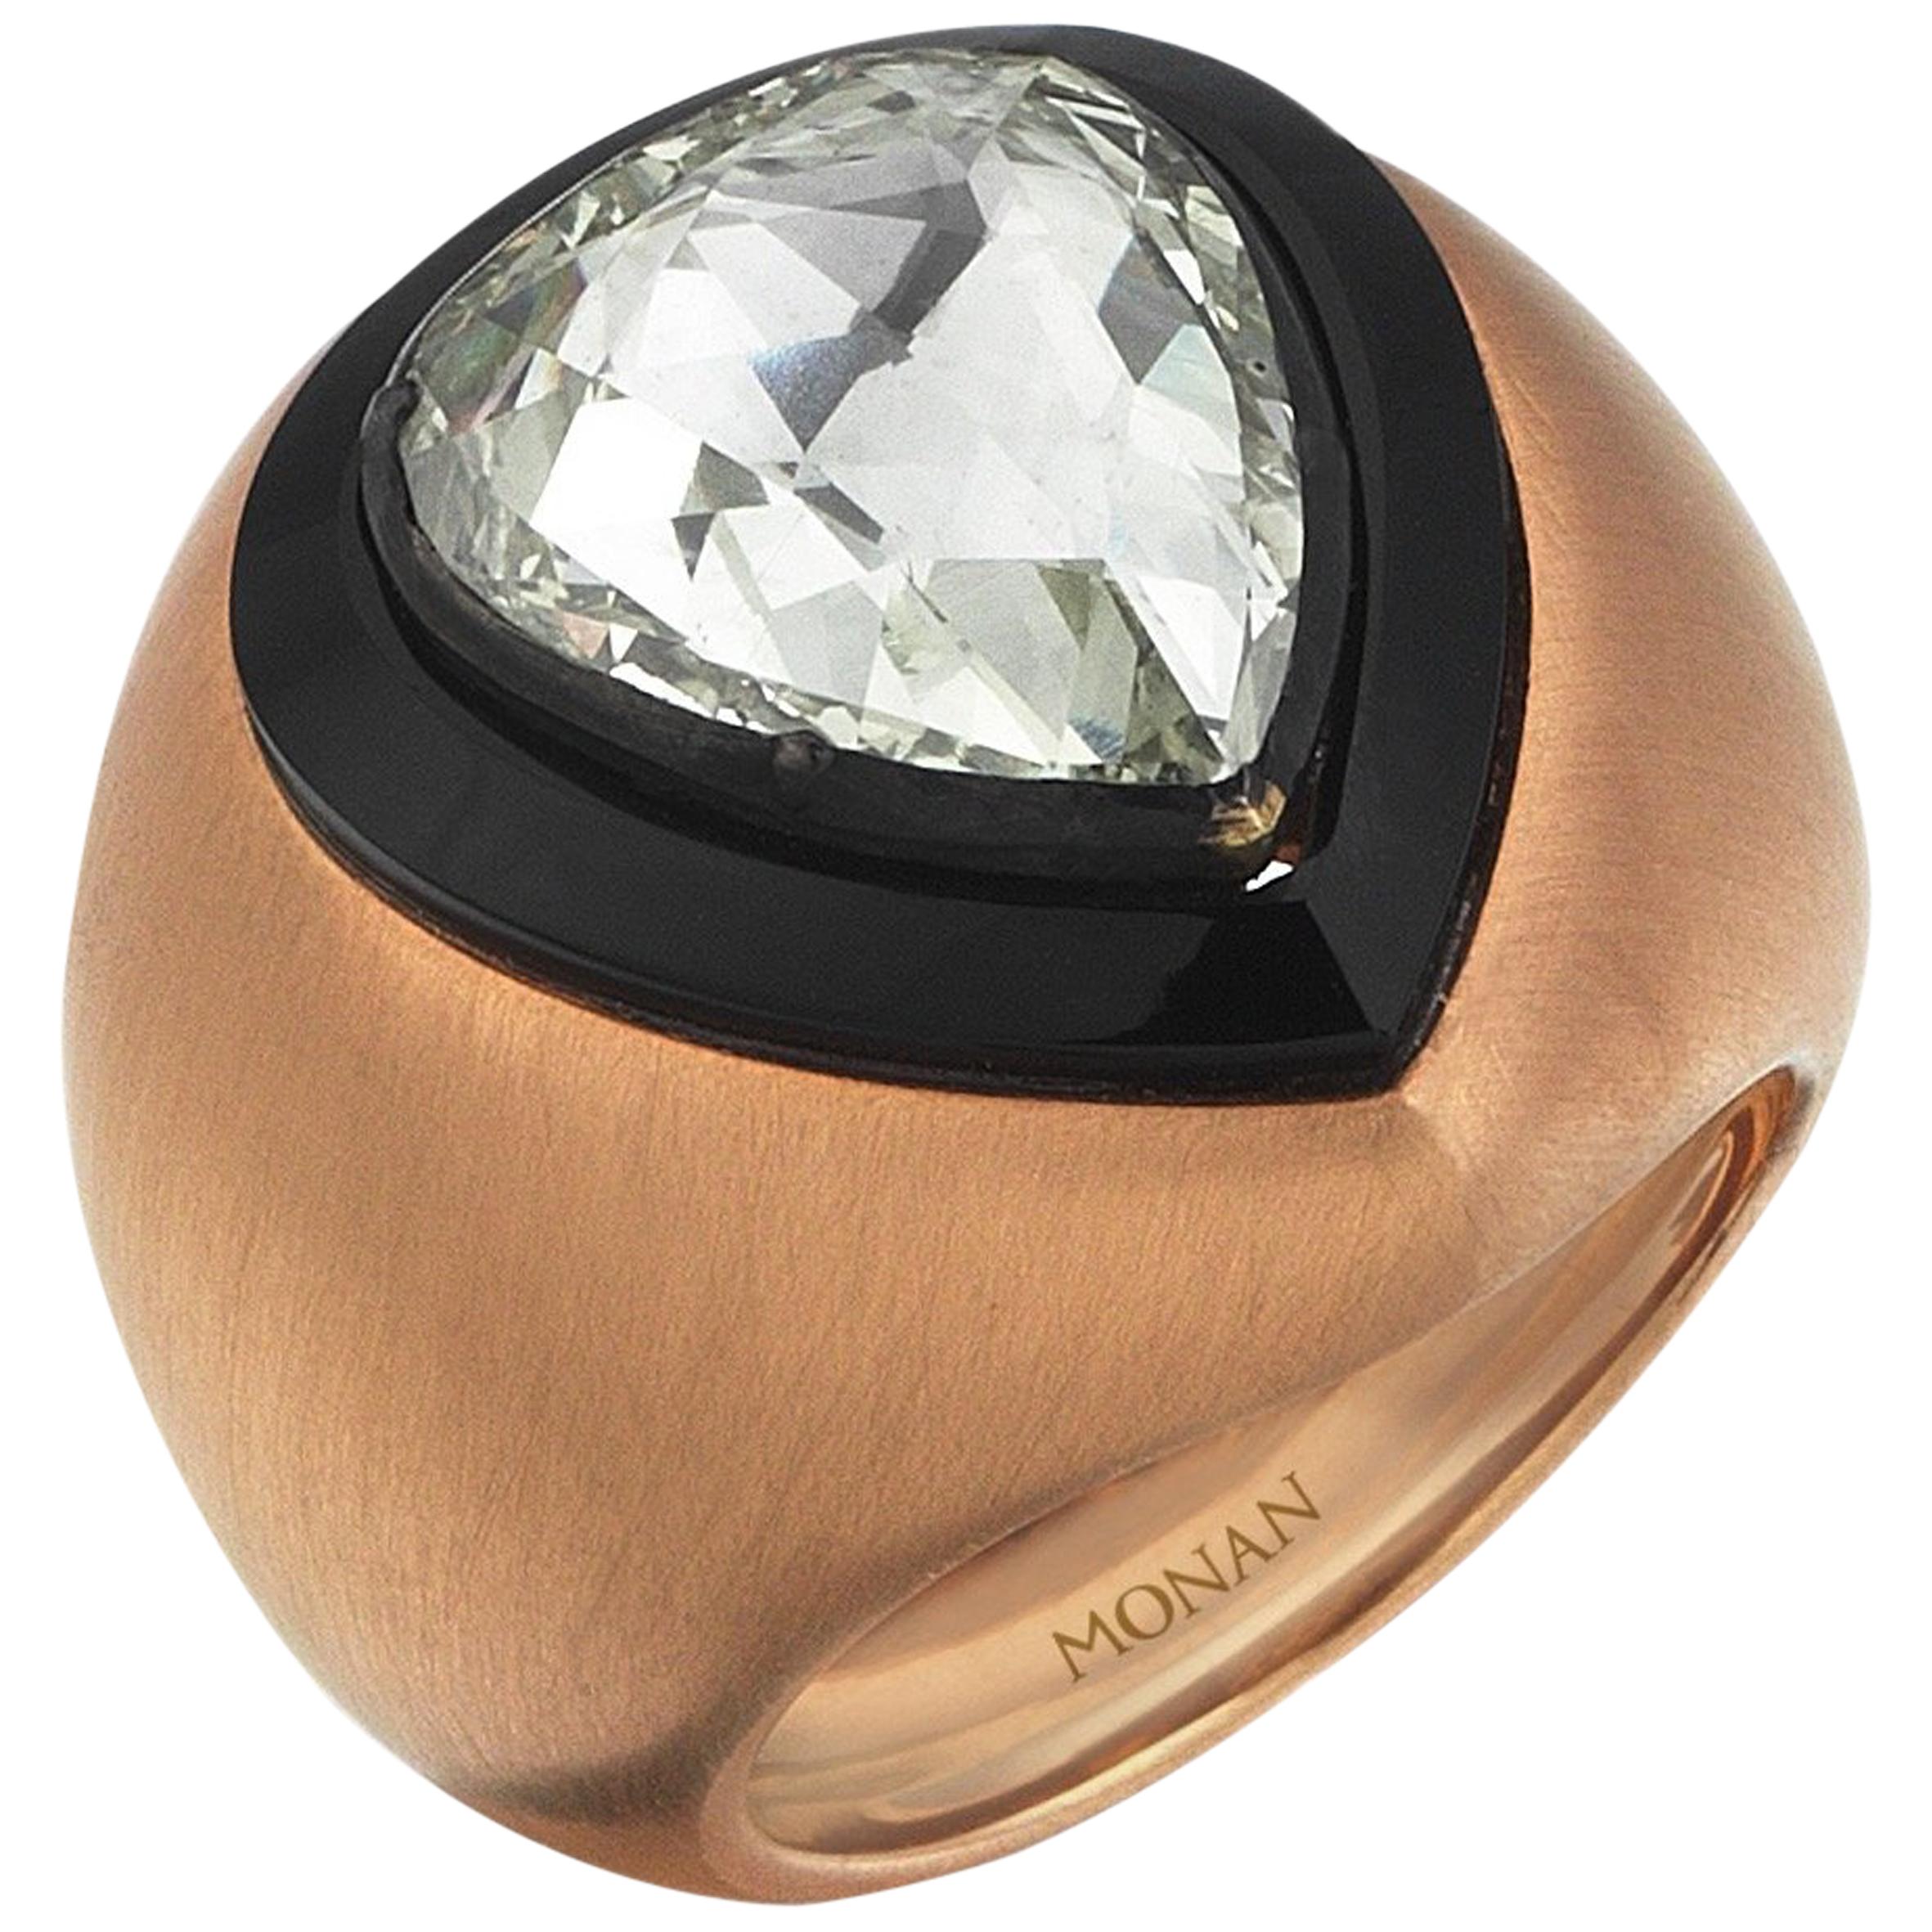 18 Karat Yelow Gold Monan Sultan Ring Set with 4.12 Carat Rose Cut Diamond